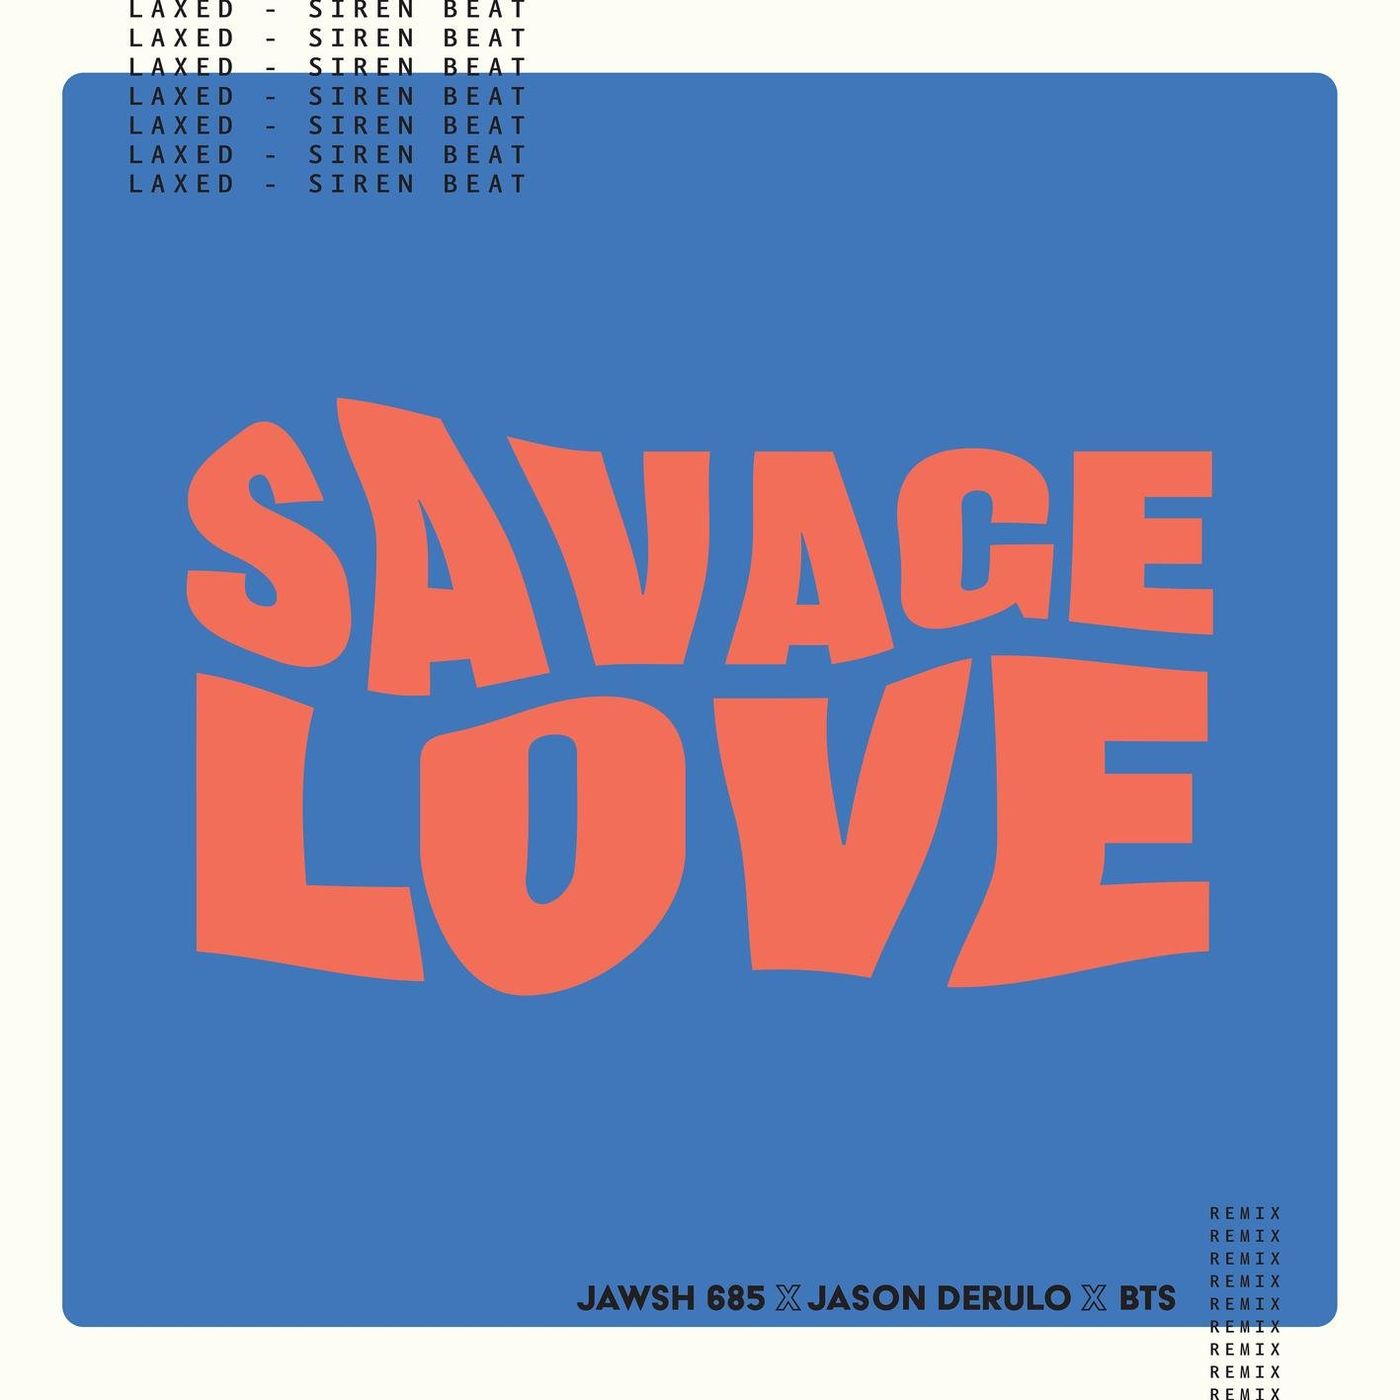 دانلود آلبوم BTS به نام (2020) Jason Derulo - Savage Love (Laxed - Siren Beat)+[Remix] با کیفیت FLAC 🔥